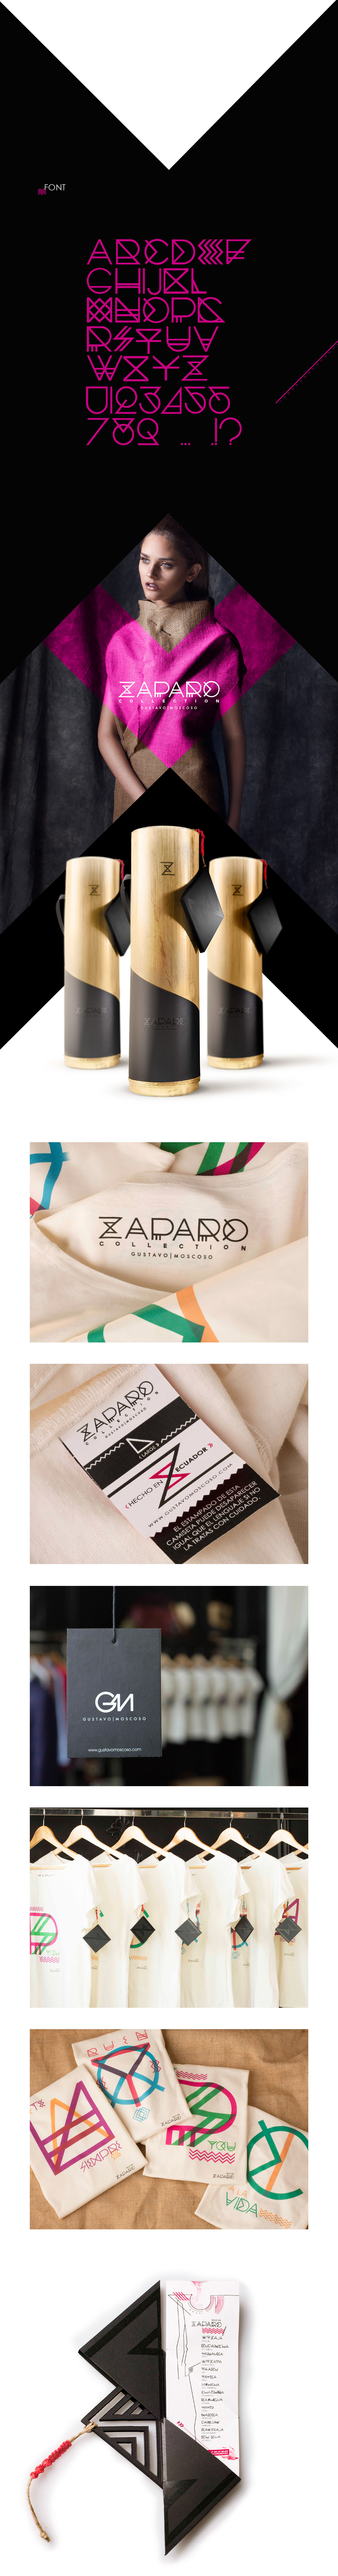 Clothing zaparo Ecuador Pack natural handmade craft culture language design Label typo